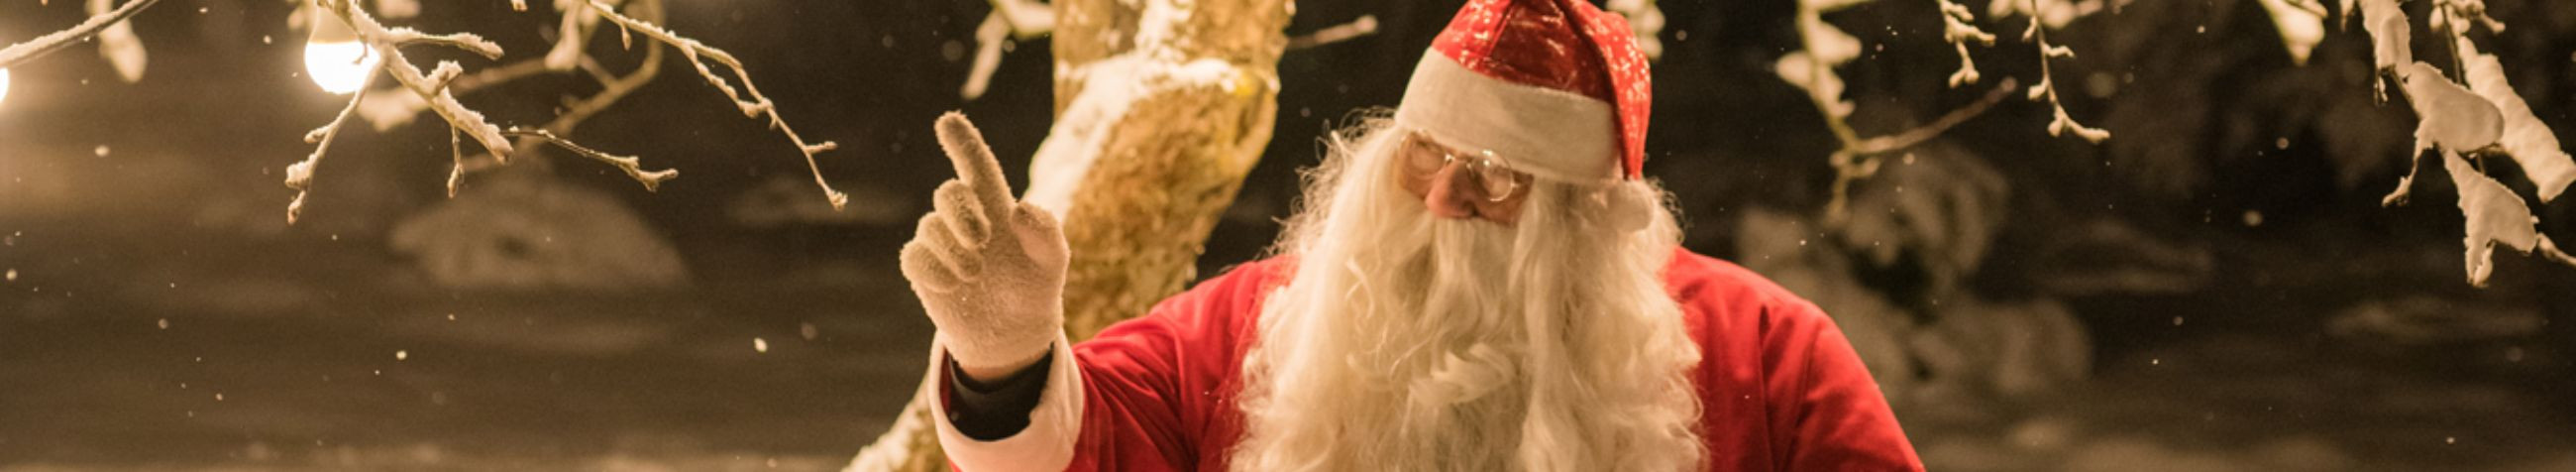 Jõuluvana vend Glämmi ja tema päkapikud pakuvad Talveküle Jõulumaal Torma Mõisakompleksis unustamatuid jõuluseiklusi, tuues jõulumeeleolu igasse südamesse.